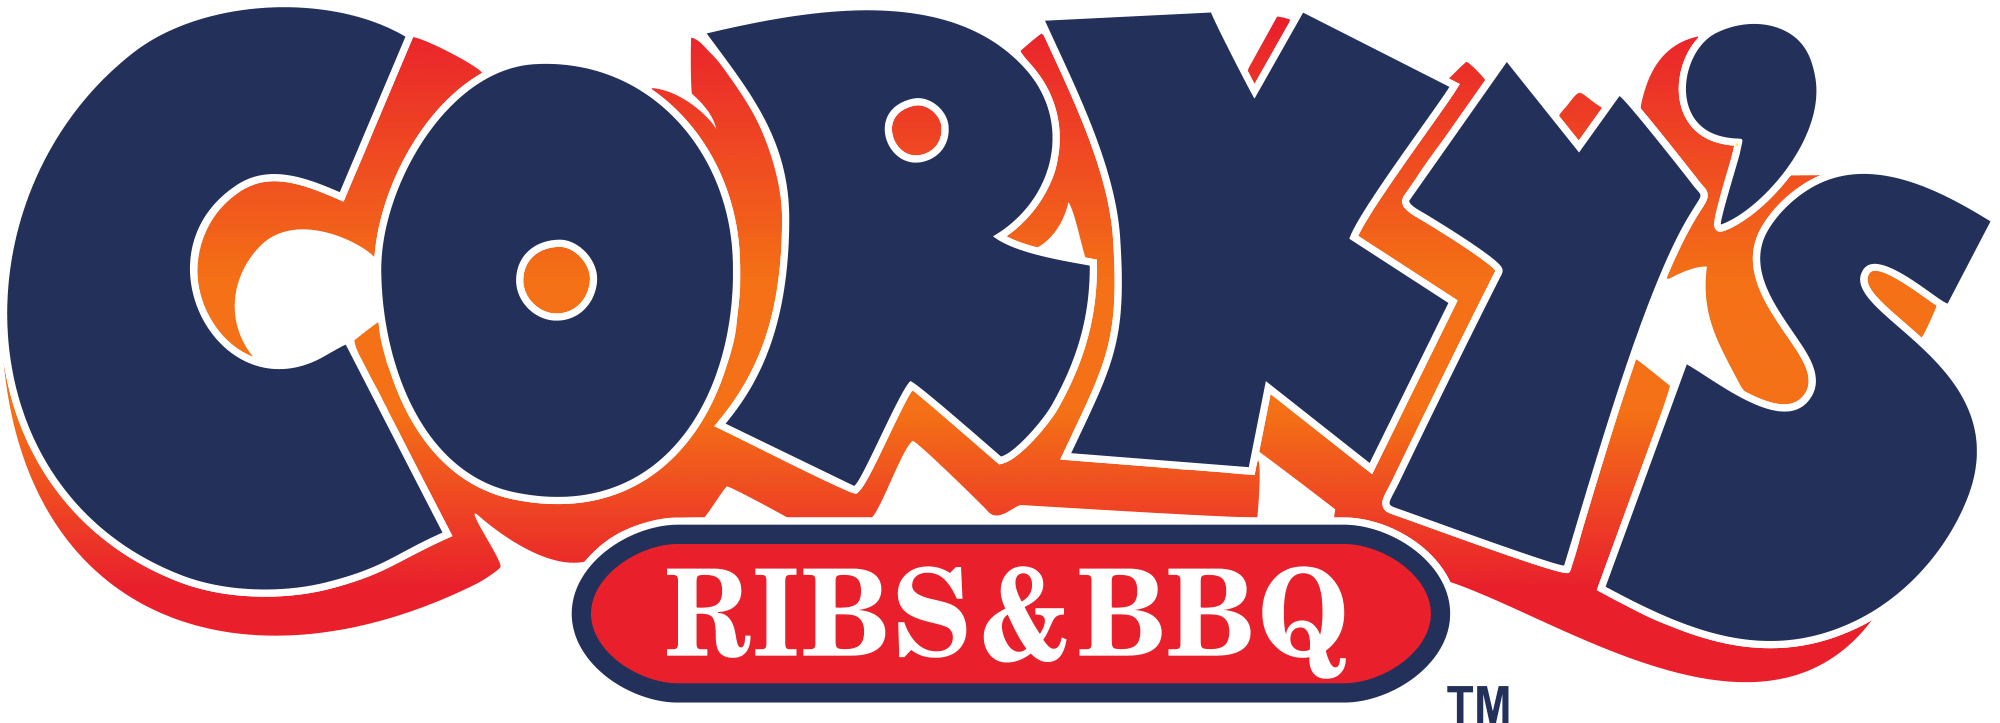 Corky's Logo - Corky's BBQ. Friends Life Community